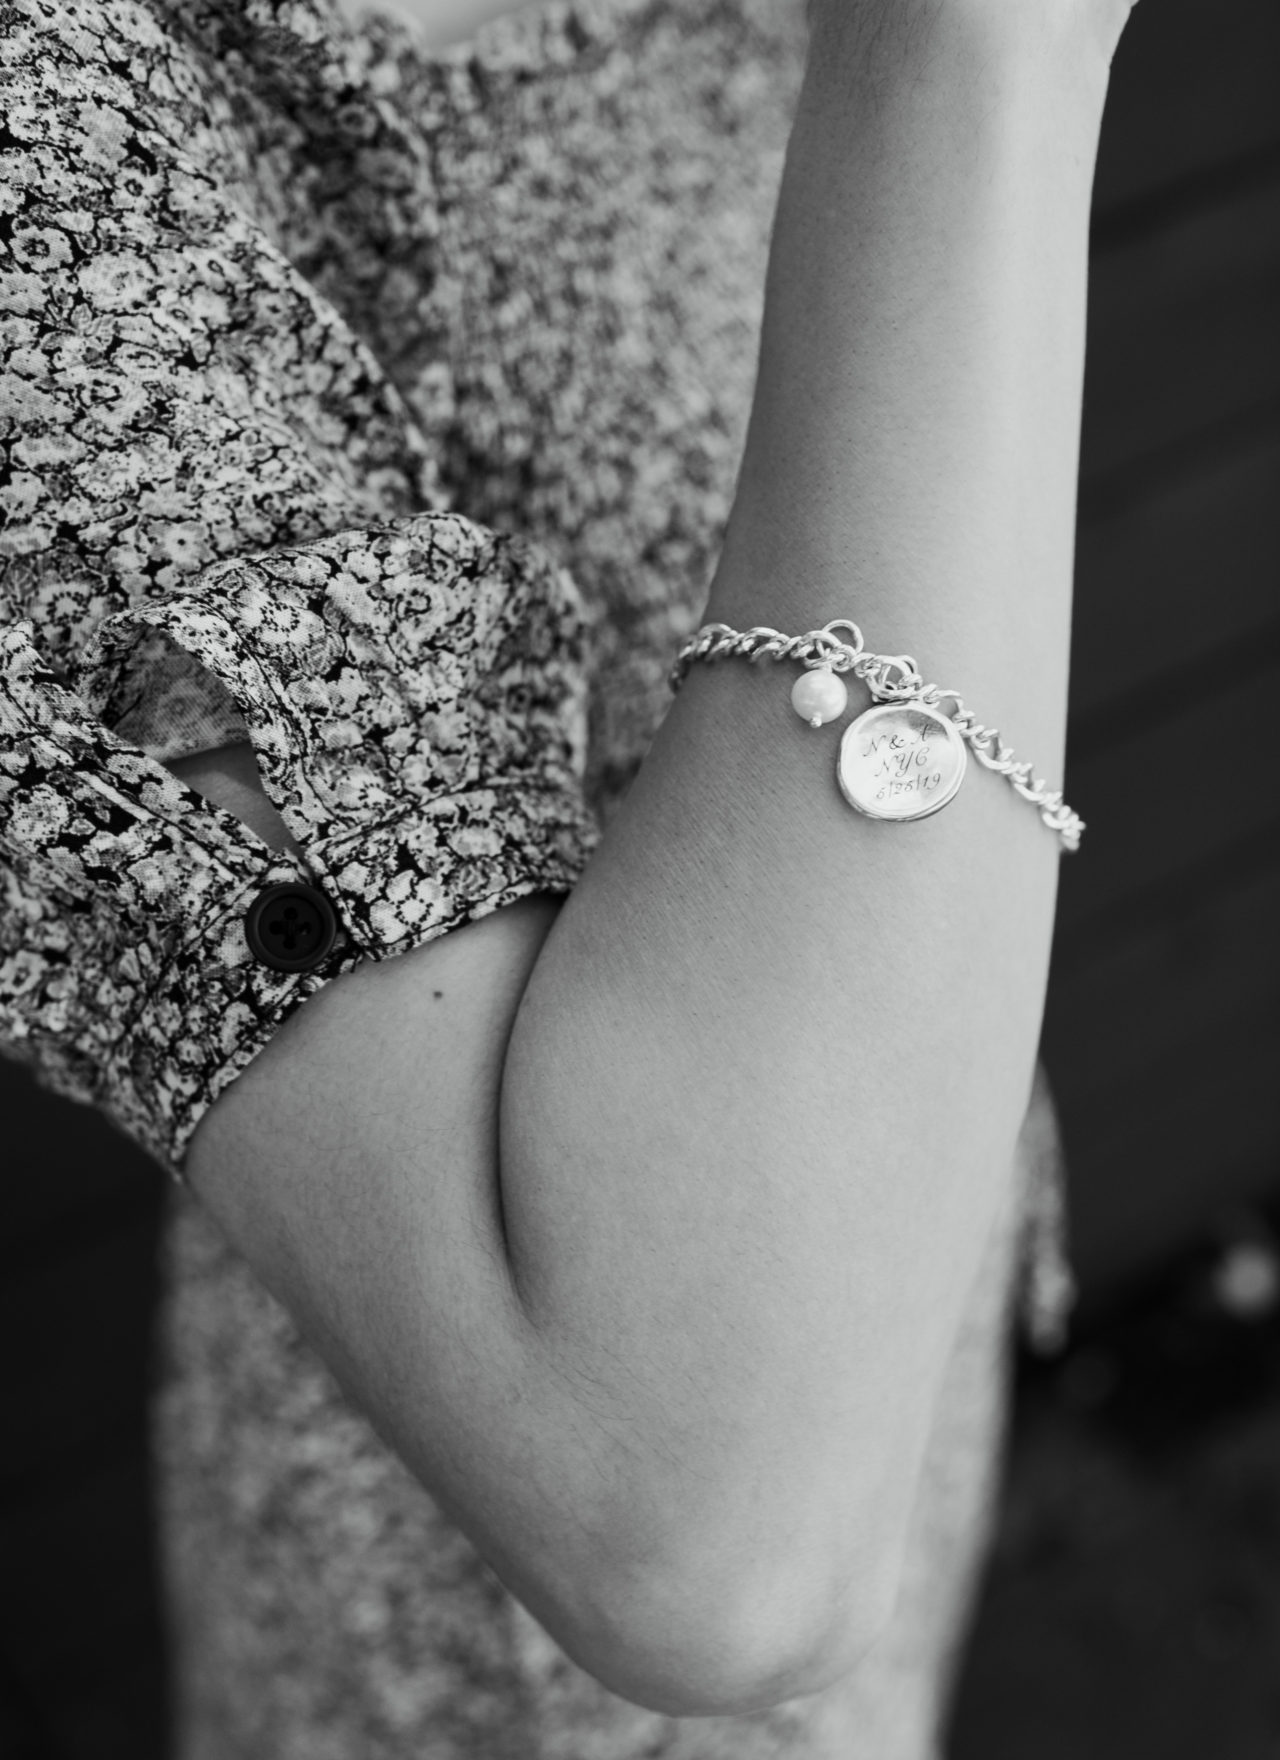 Personalized Jewelry: My Wedding Charm Bracelet